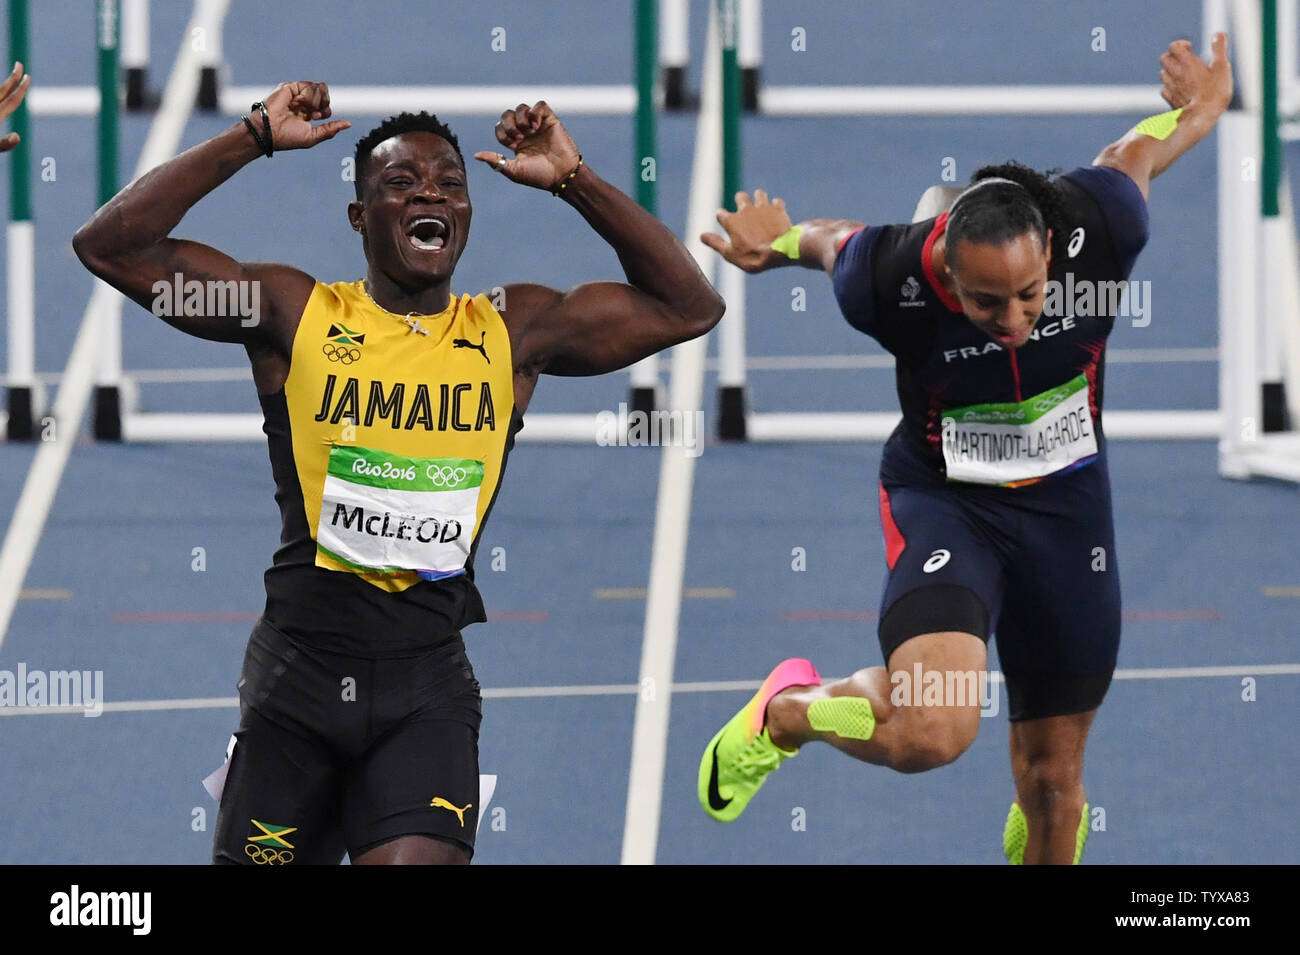 Omar Mcleod della Giamaica celebra dopo vince la medaglia d'oro in Uomini 110m Hurdles Finale allo Stadio Olimpico presso il Rio 2016 Olimpiadi di estate a Rio de Janeiro, Brasile, il 16 agosto 2016. Foto di Richard Ellis/UPI Foto Stock